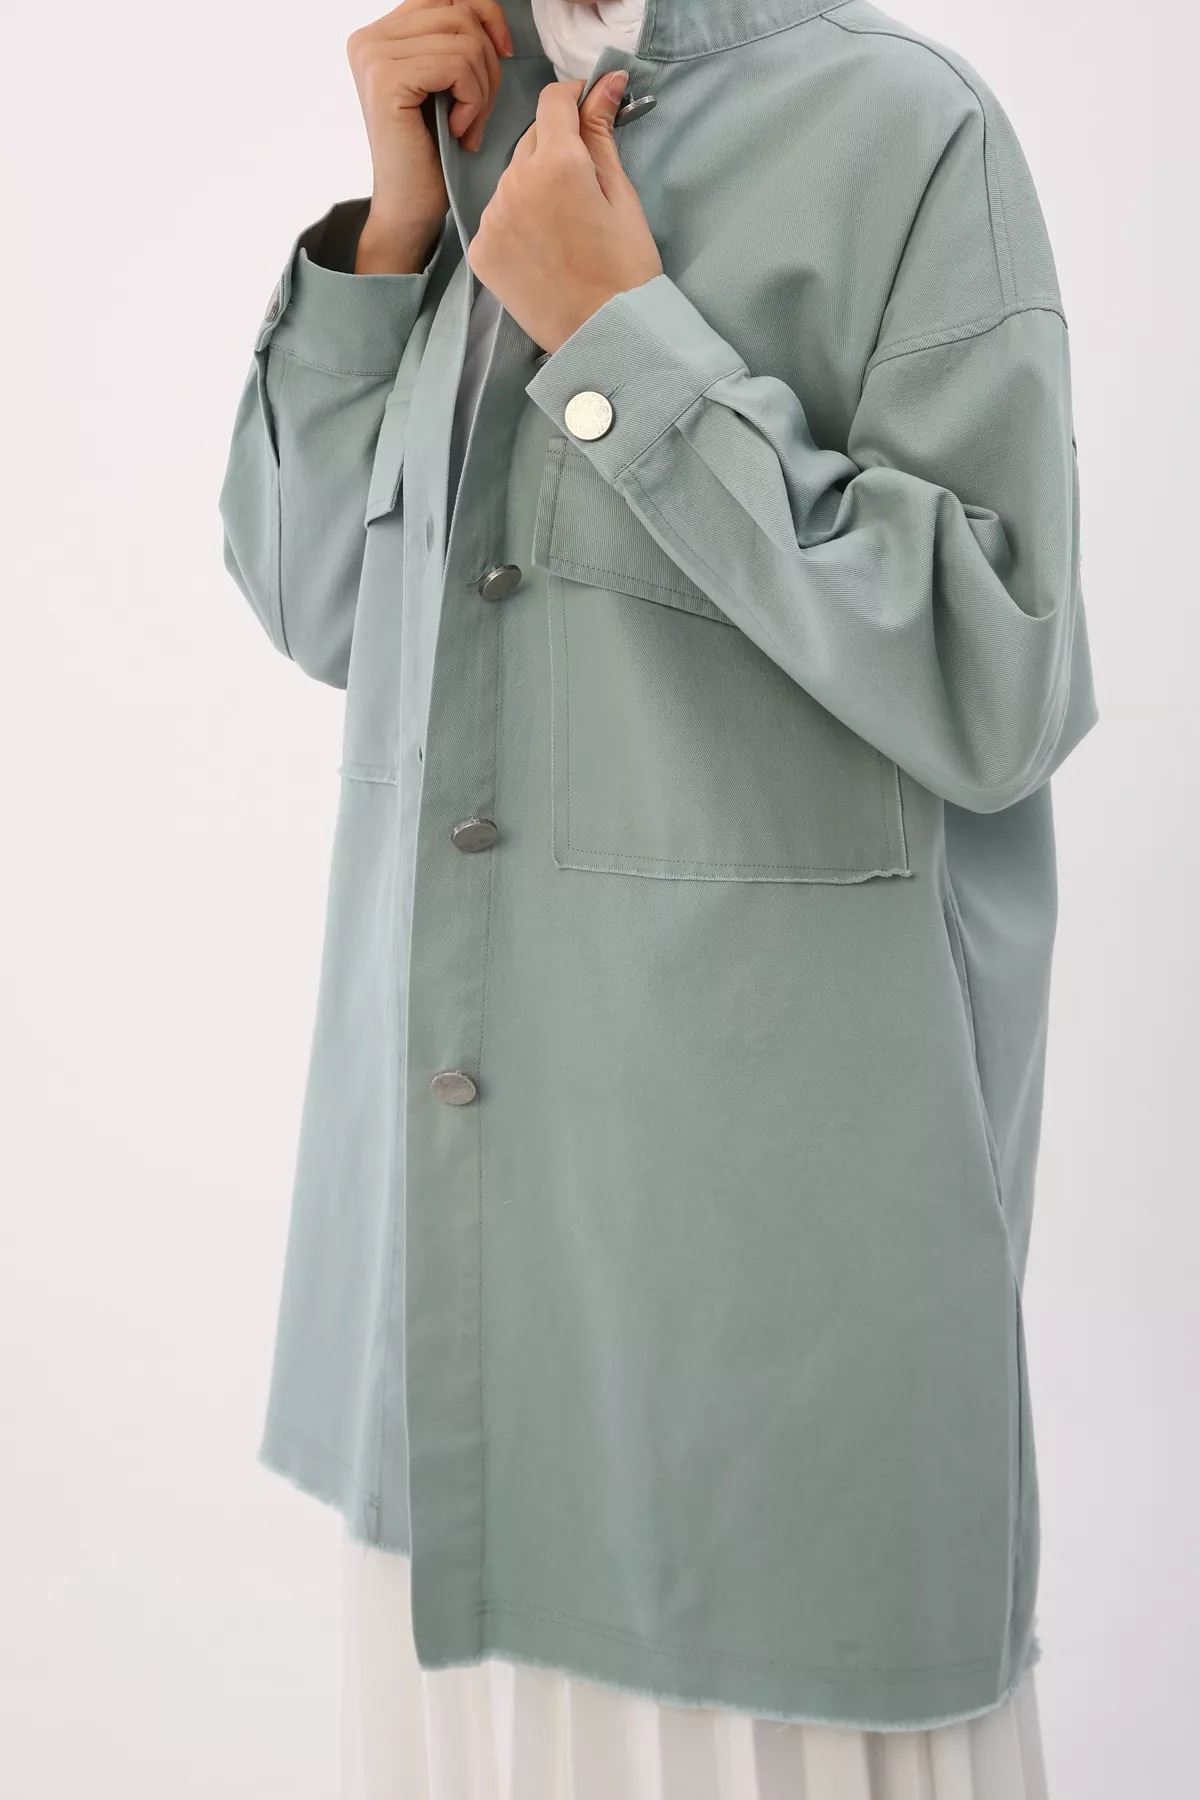 Kadın Ceket - Mint Yeşili